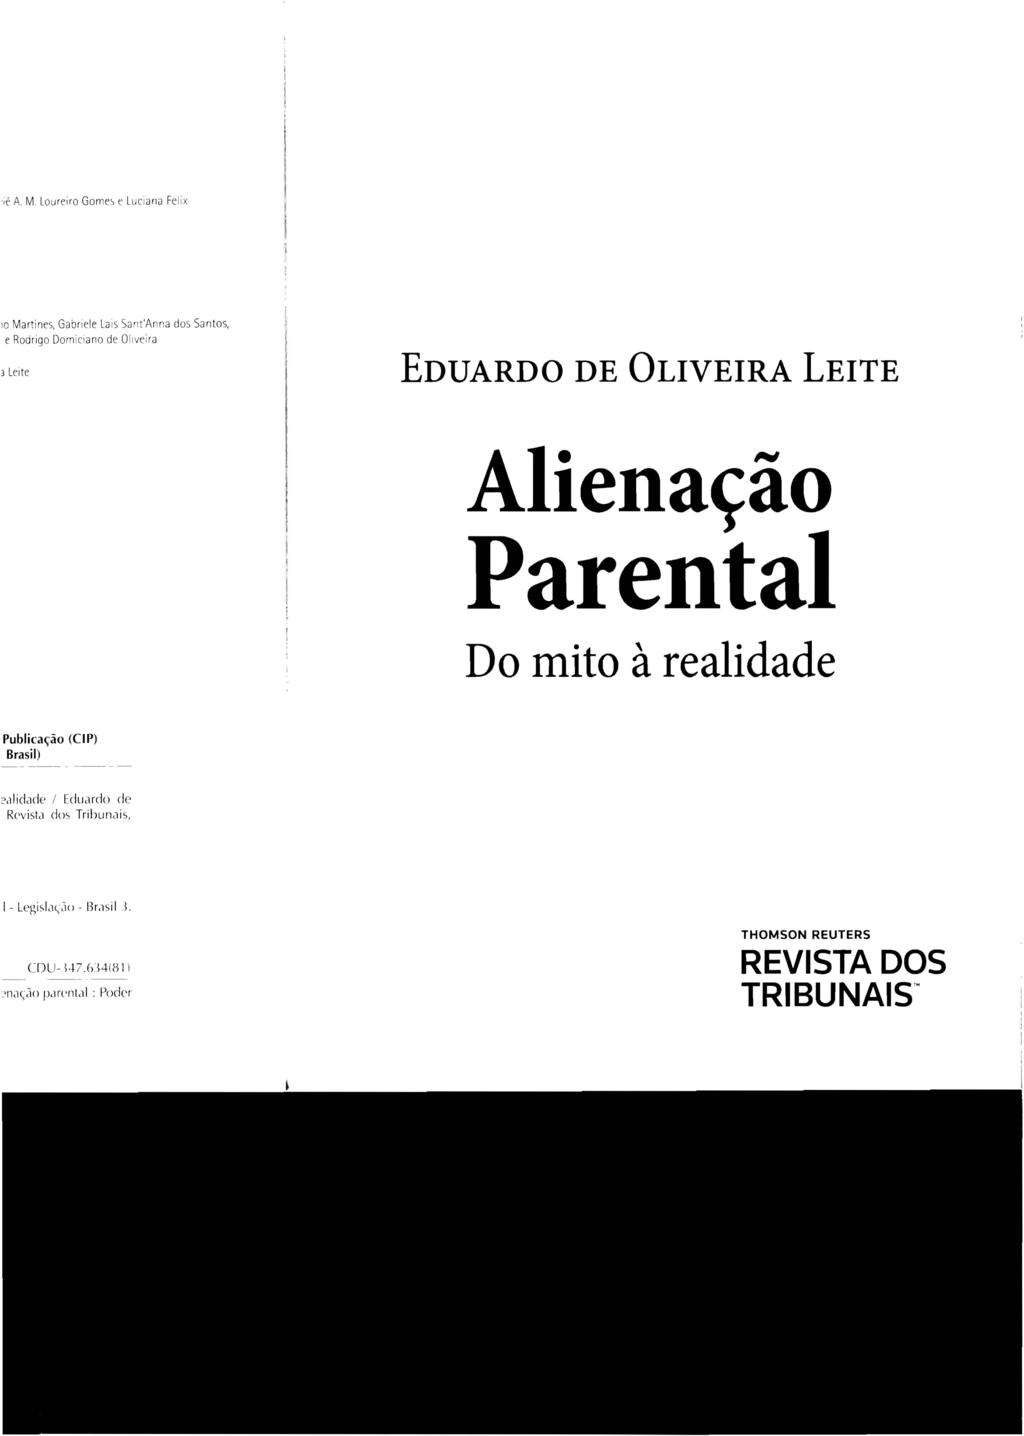 EDUARDO DE OLIVEIRA LEITE Alienação Parental Do